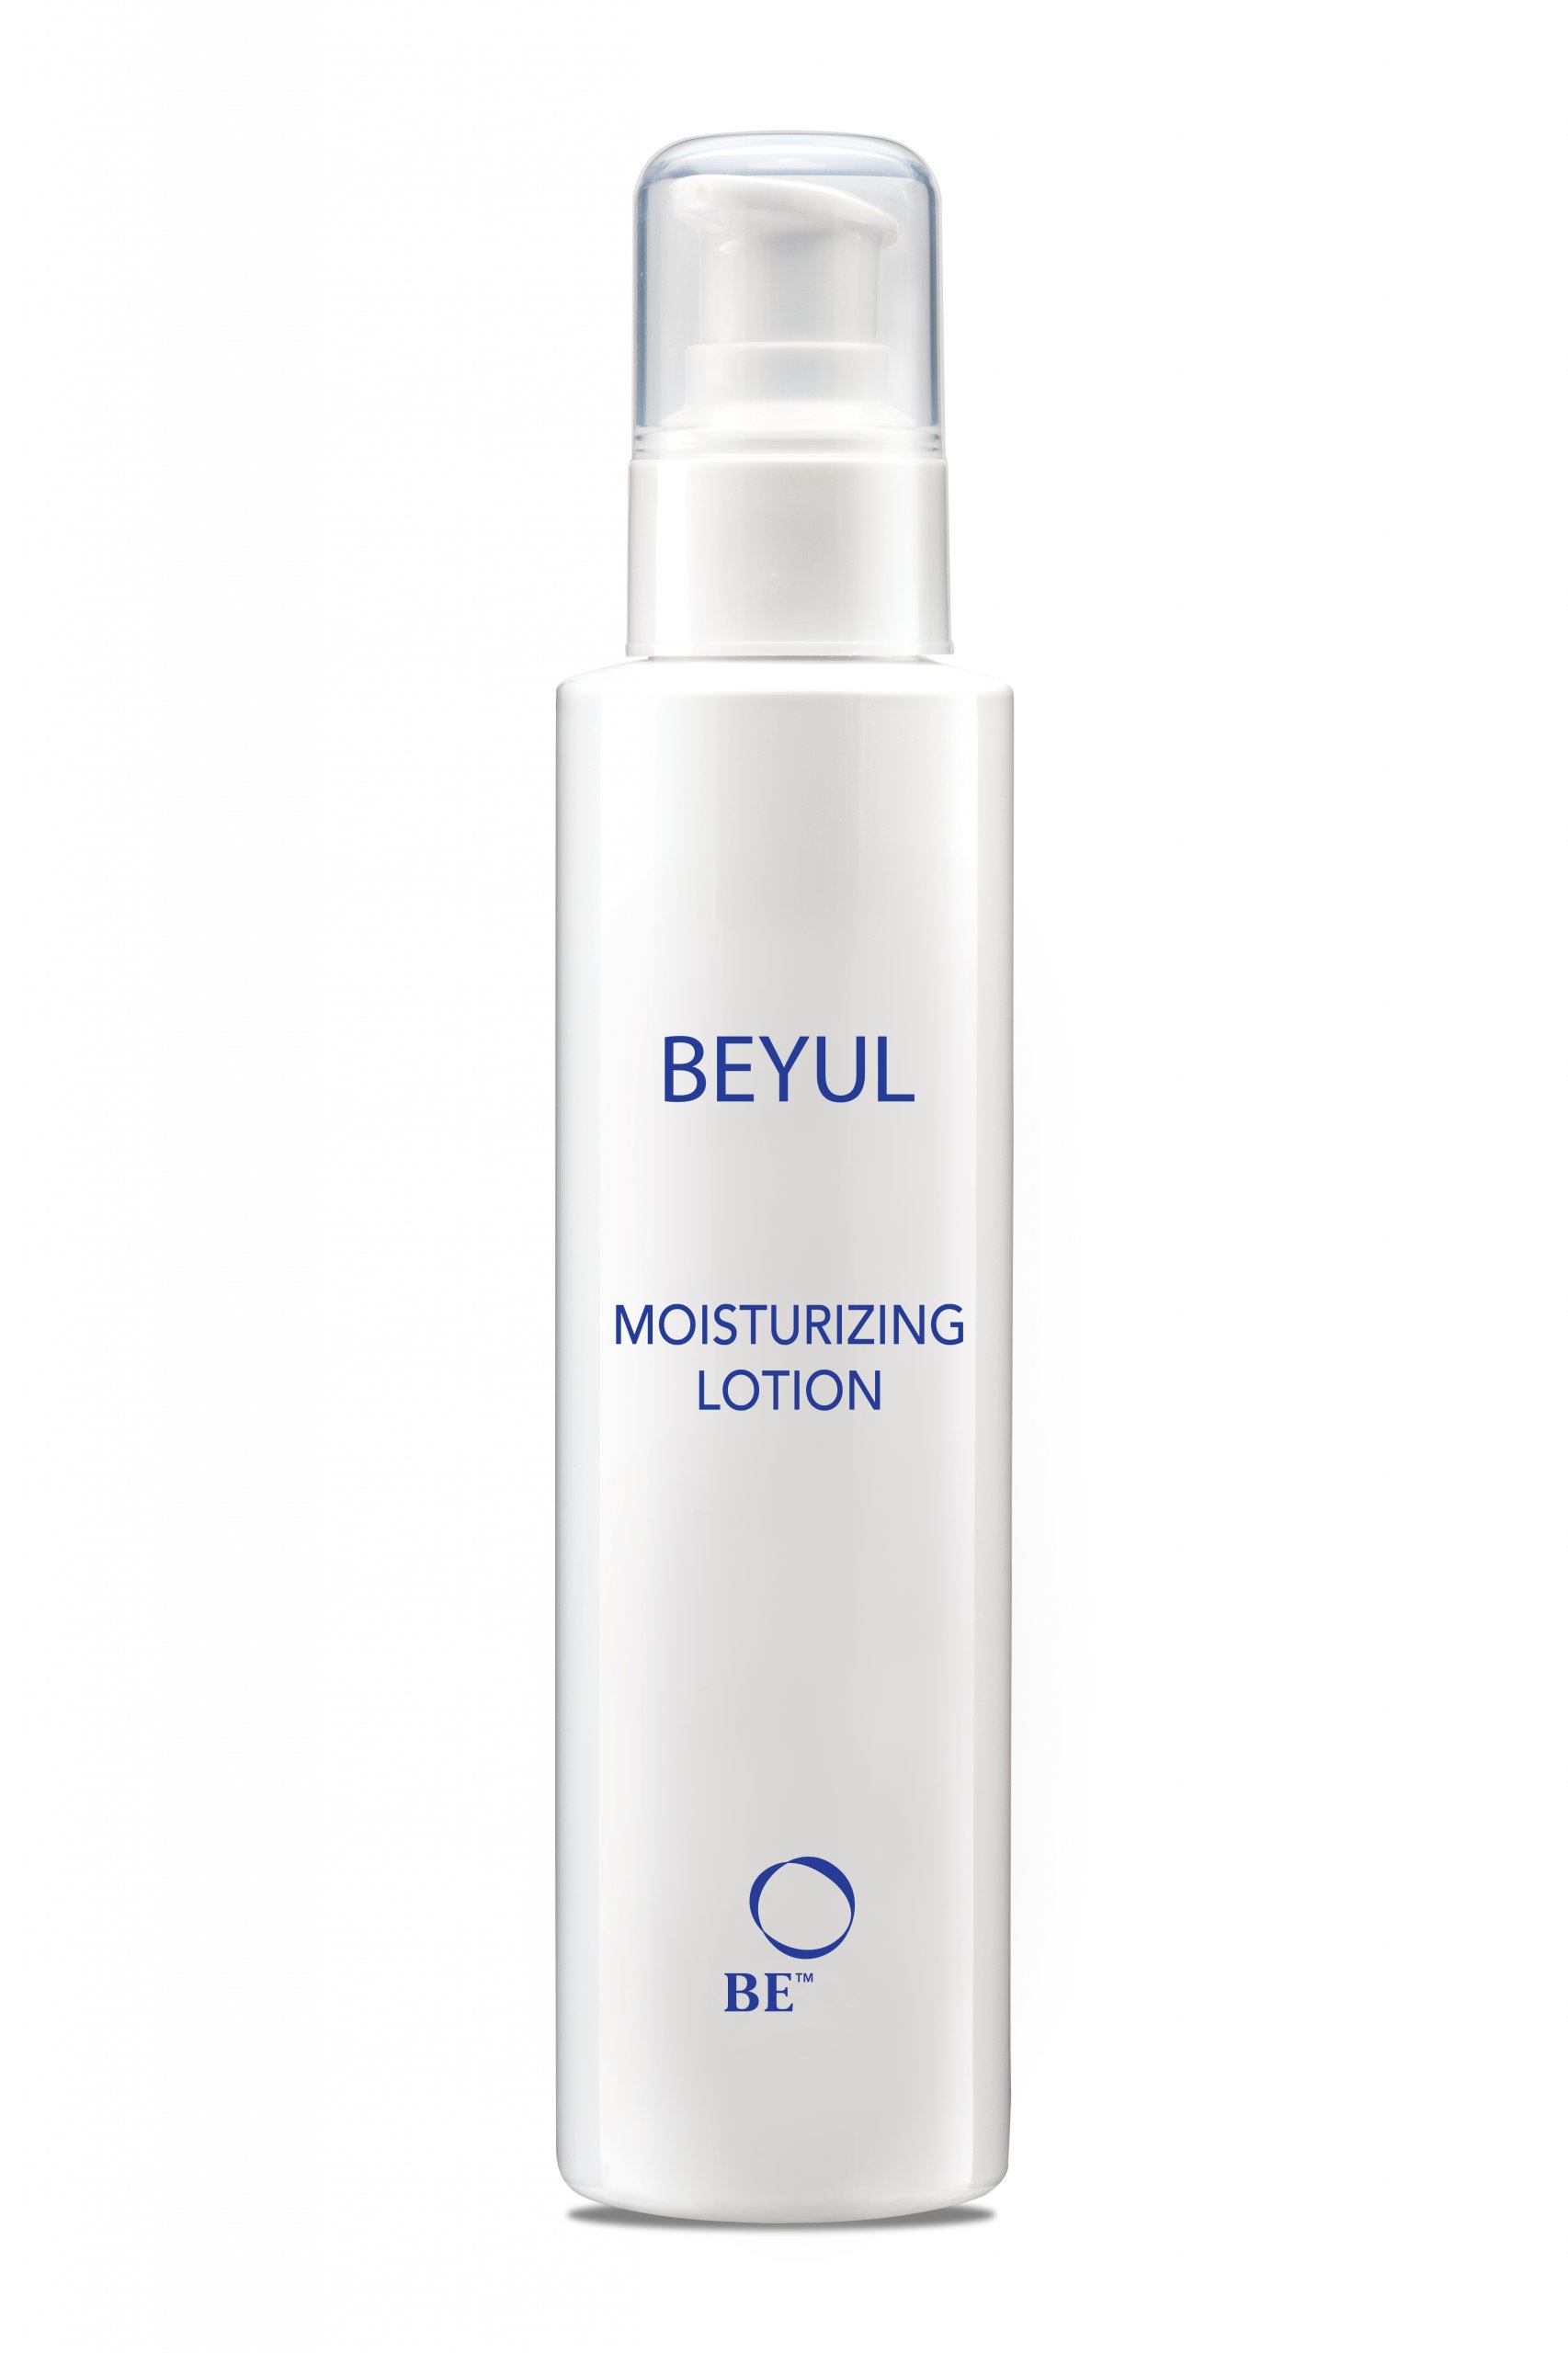 moisturizing-lotion-product-01